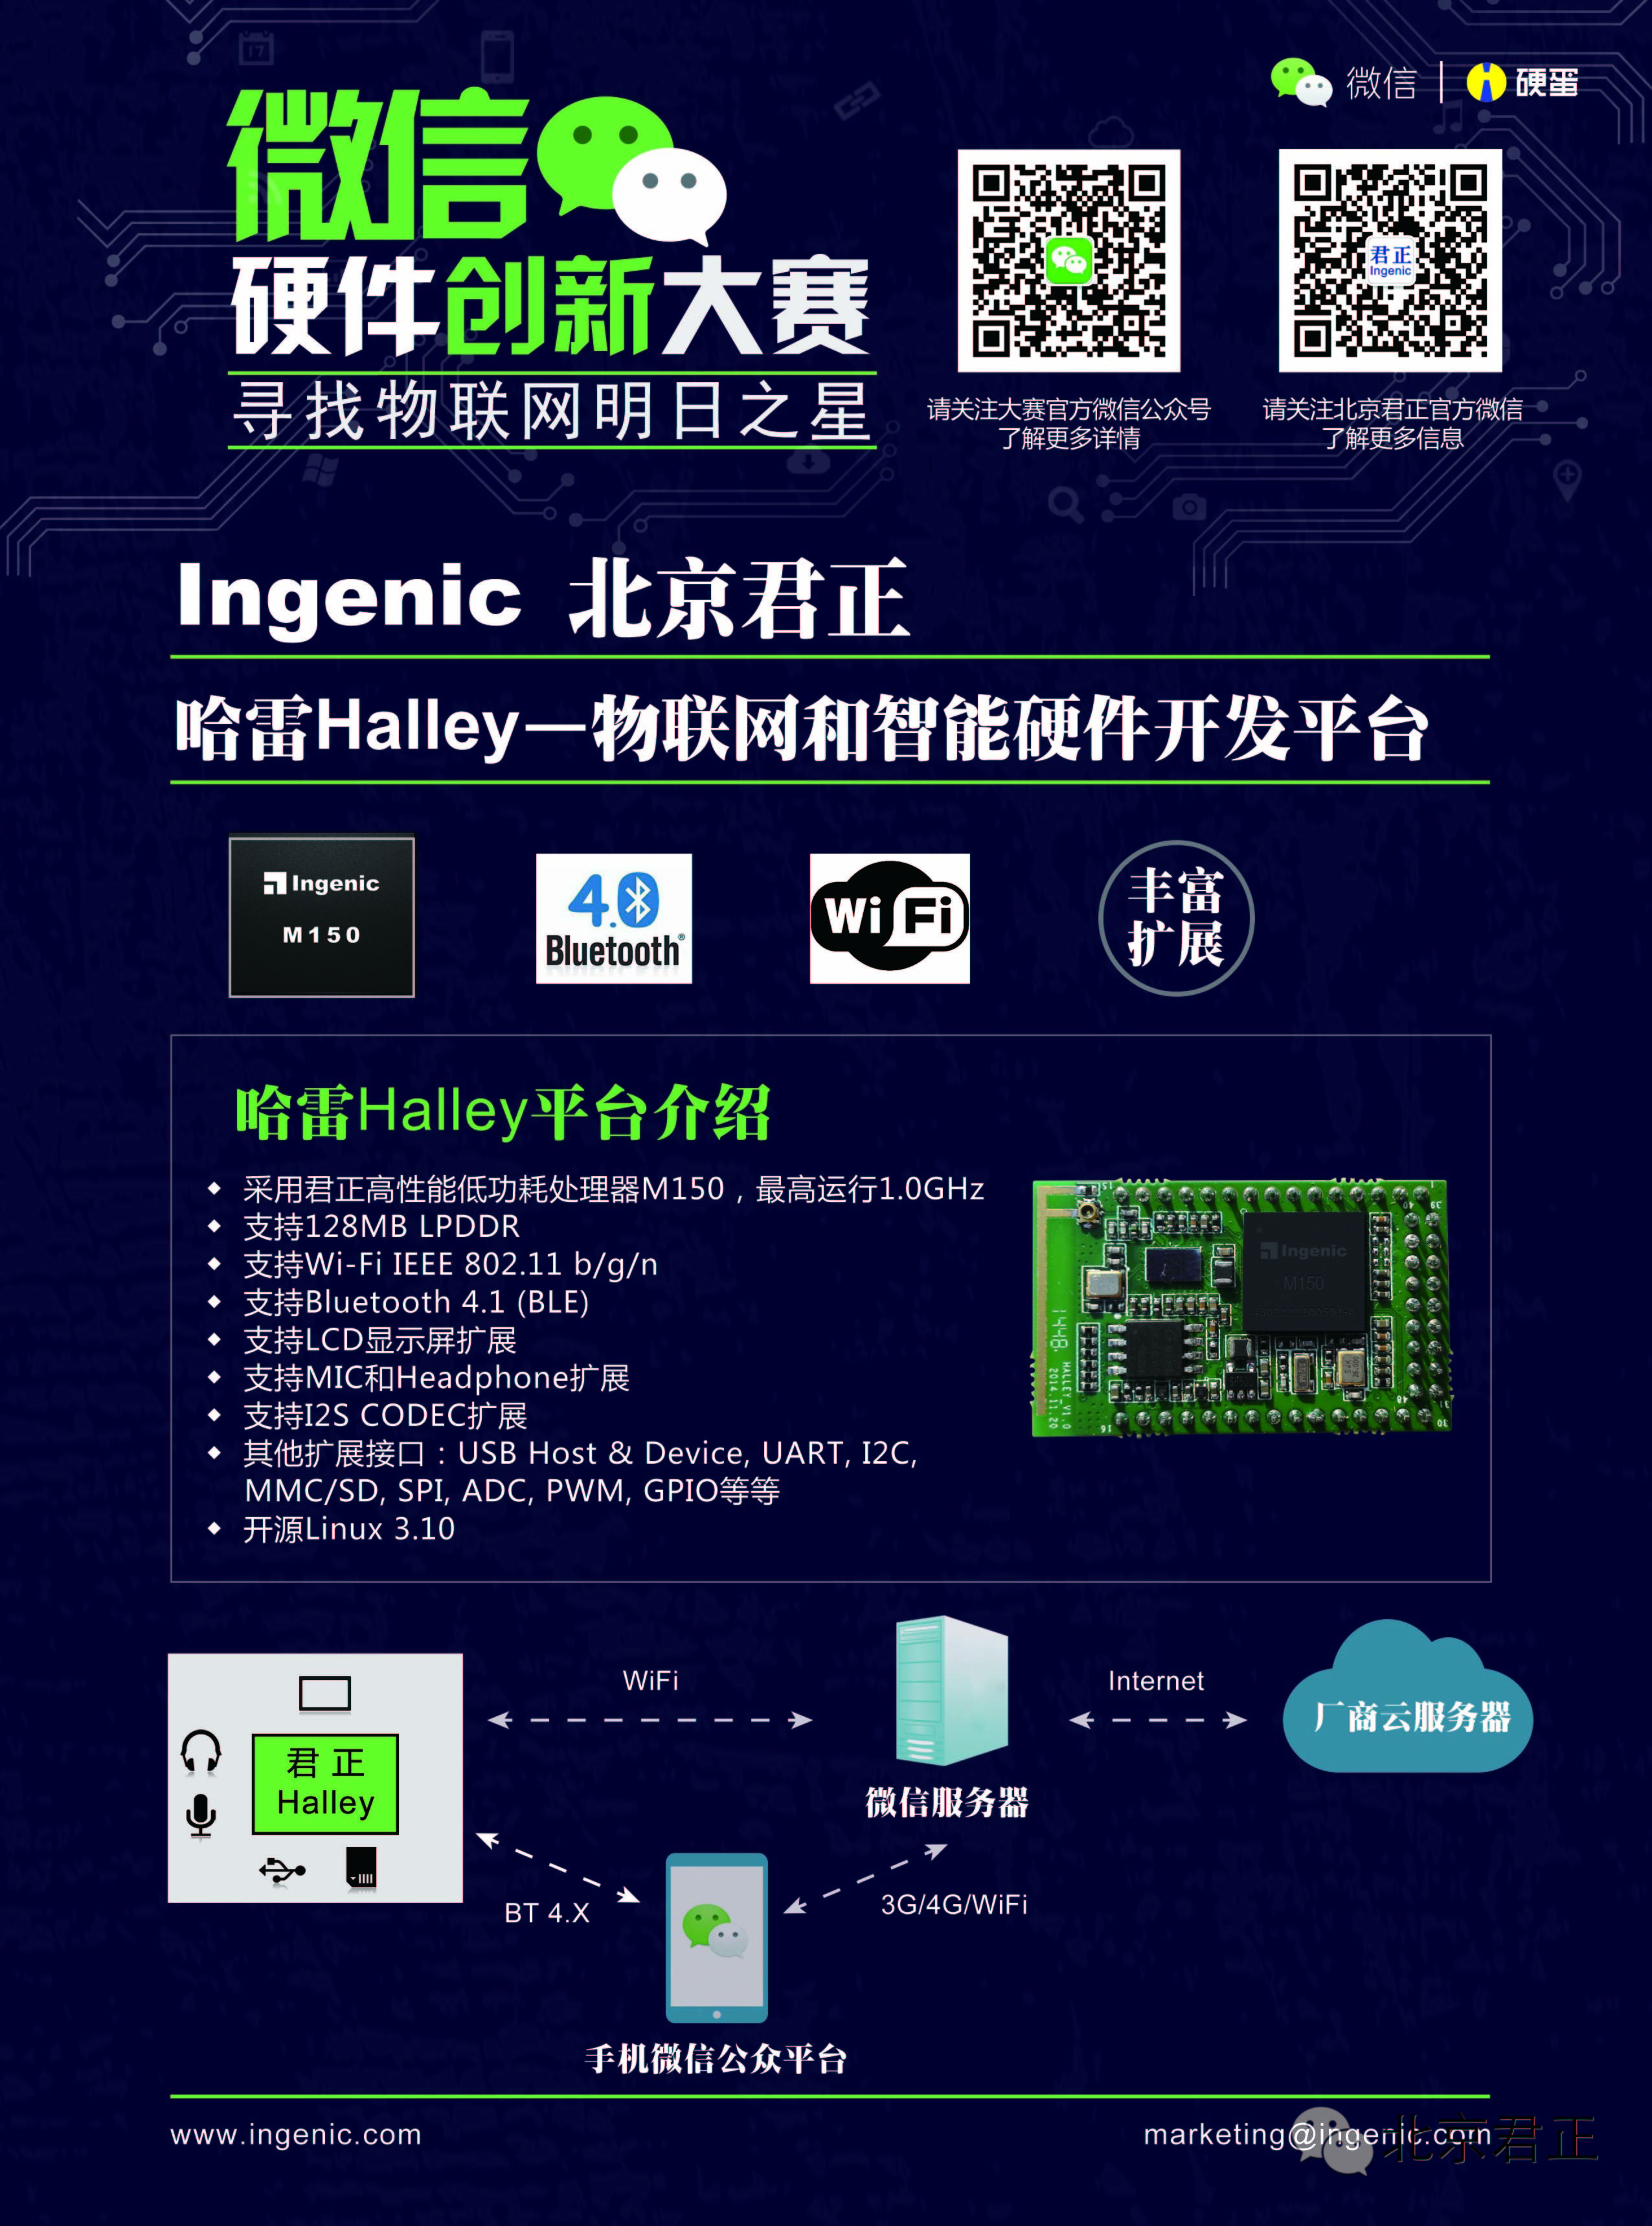 君正首款物联网平台——哈雷Halley现身“微信硬件创新大赛”上海站宣讲会-君正集团信息